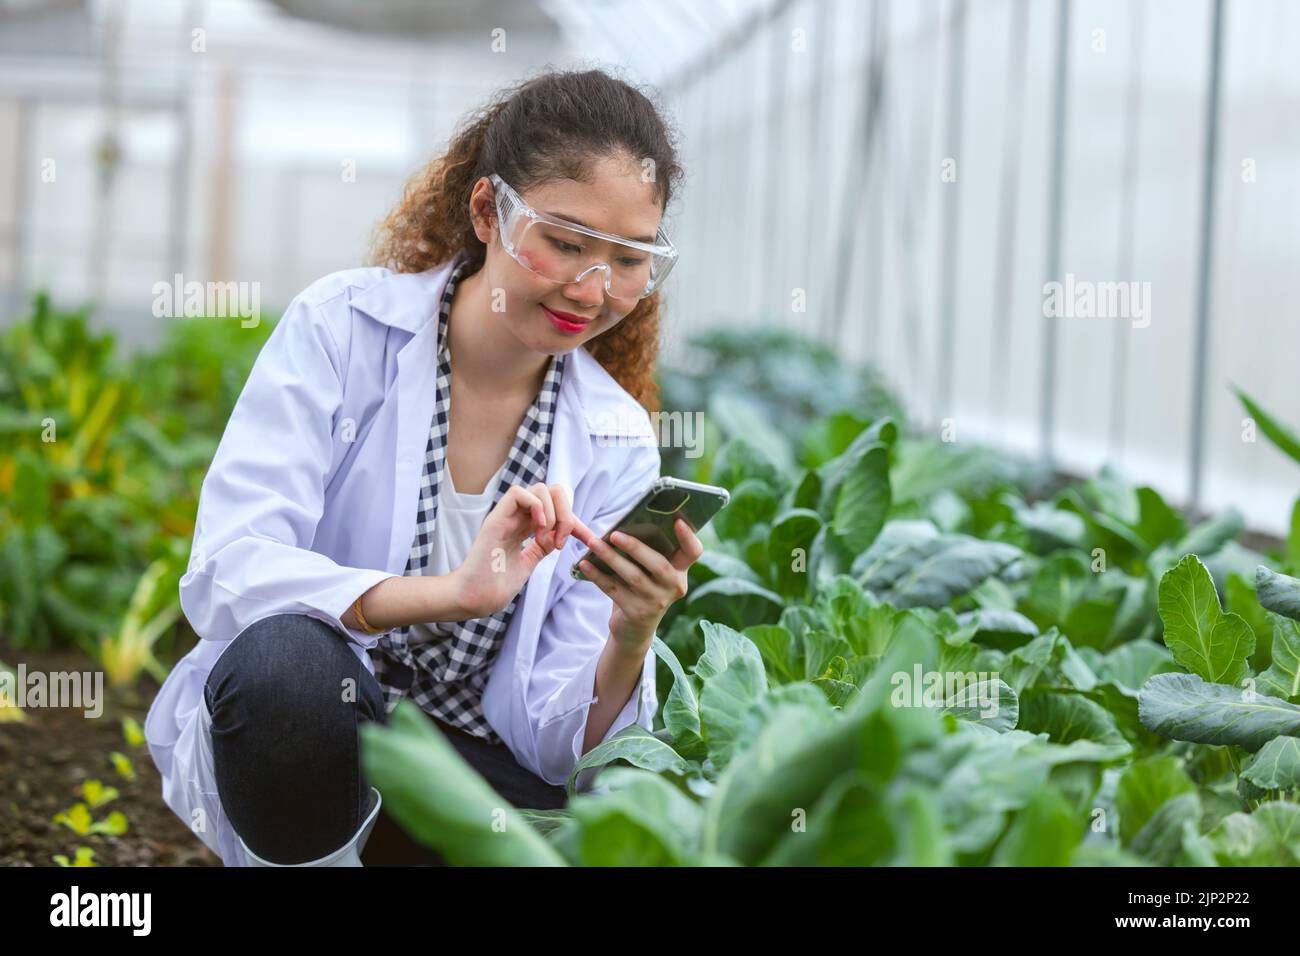 Scientifique femme chercheur personnel travailleur collecte de l'information sur les plantes à l'étude dans une ferme agricole. Concept de science agricole. Banque D'Images